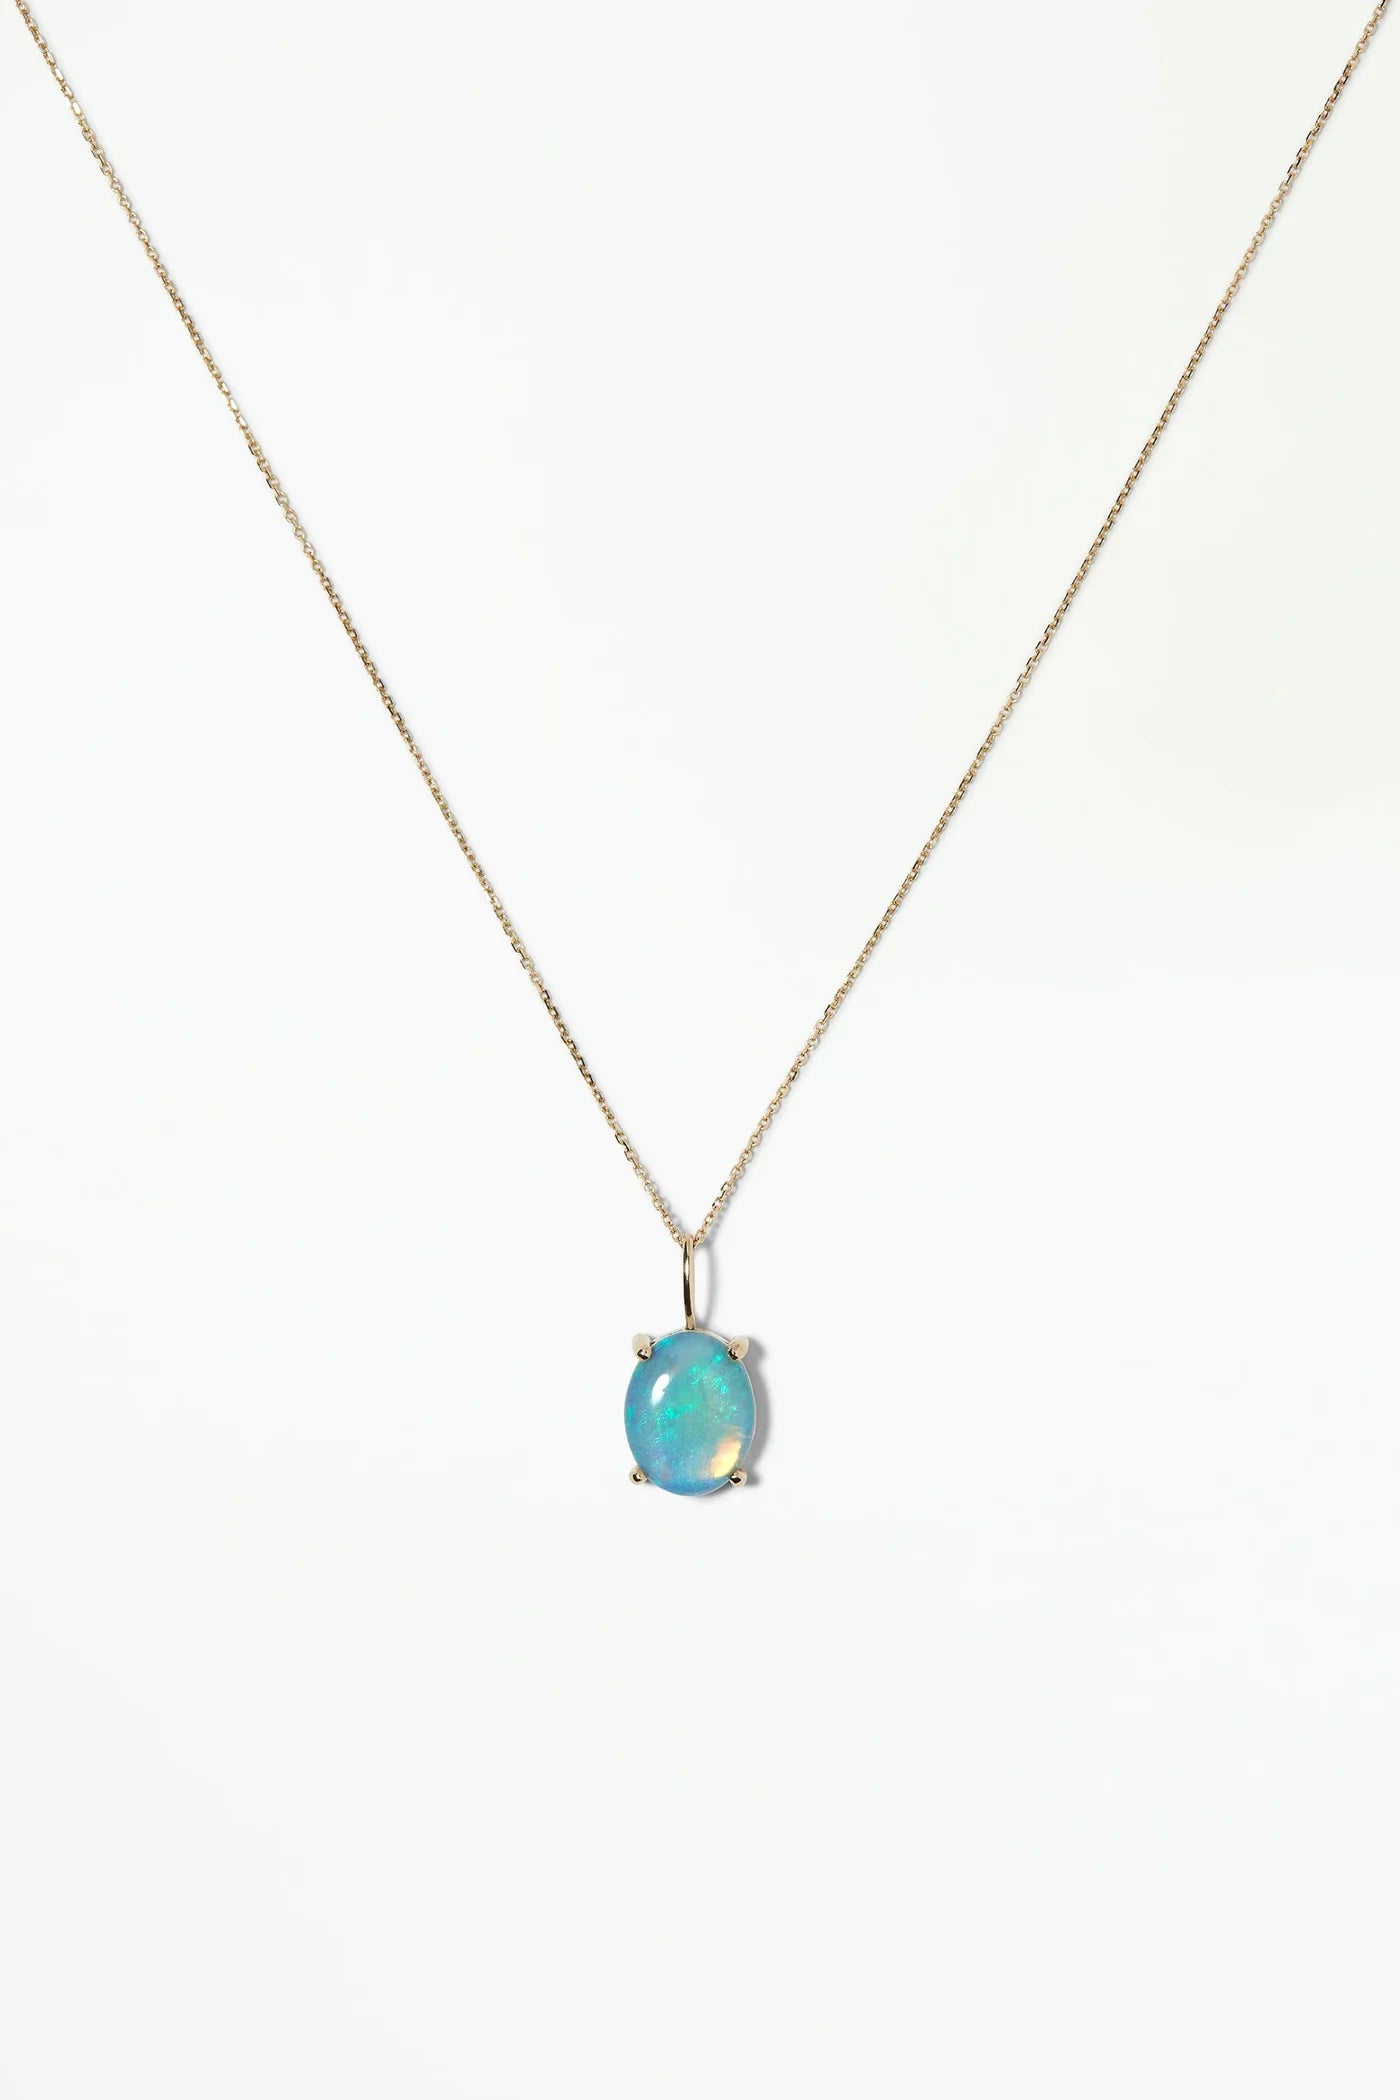 wwake / large oval solo opal charm